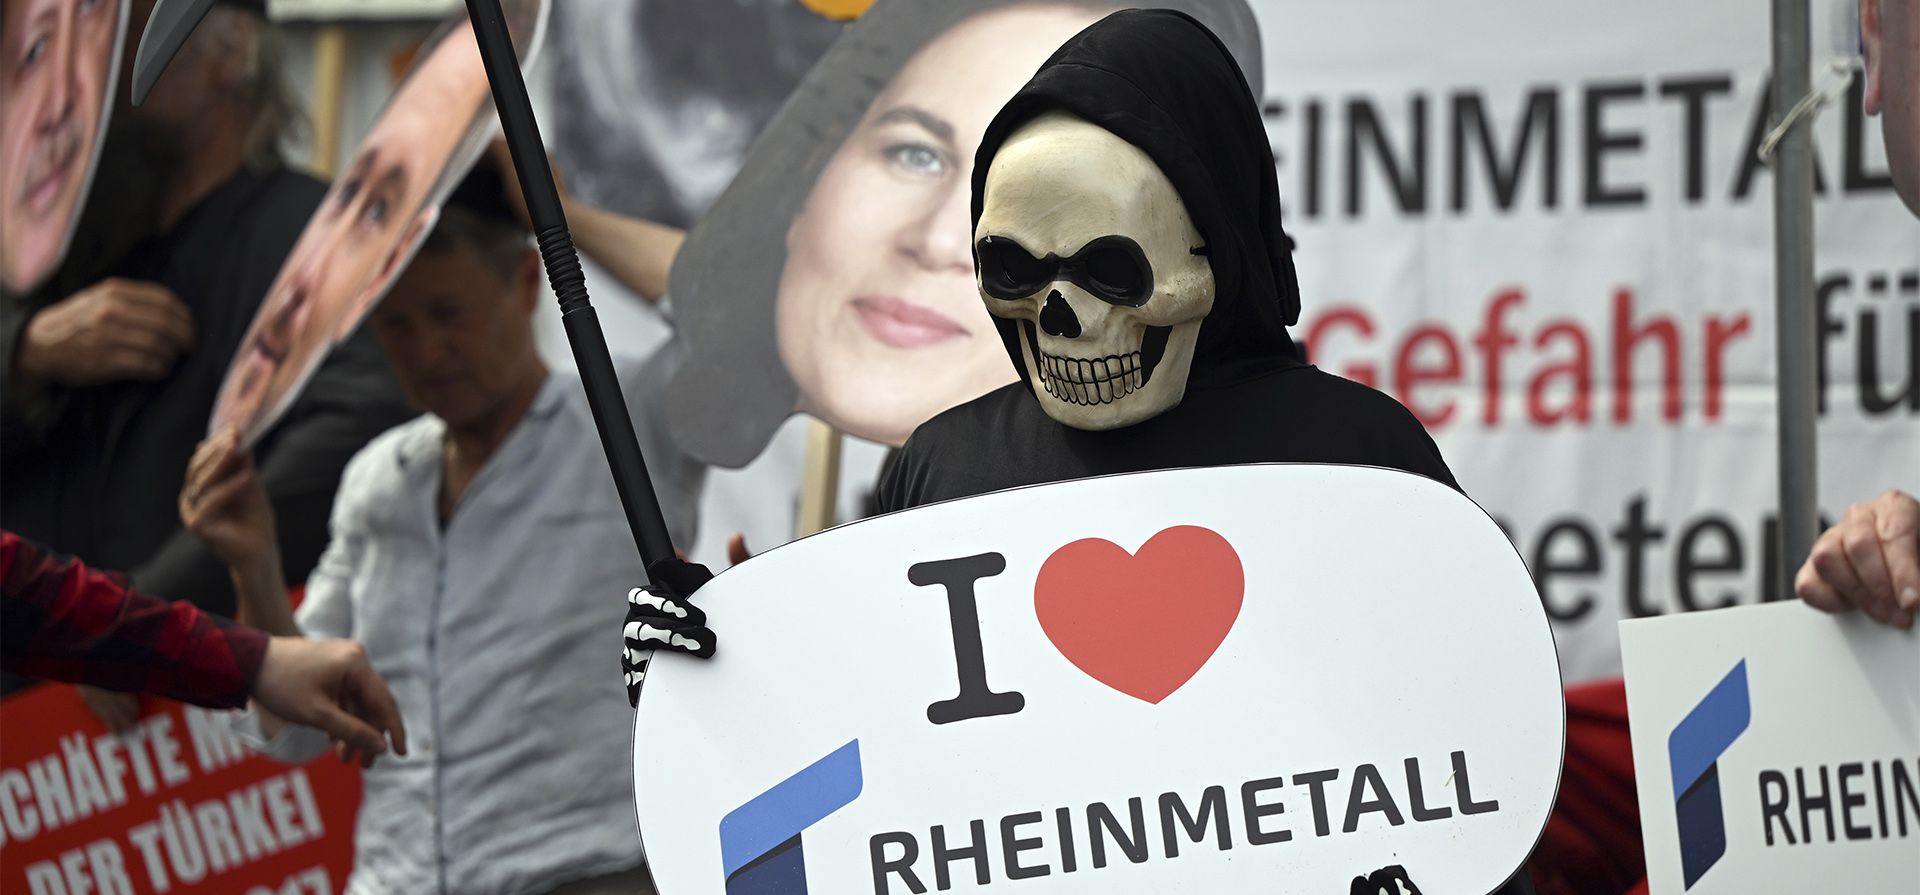 Un manifestante vestido como la Muerte sostiene un cartel que dice "Me encanta Rheinmetal" en Düsseldorf, Alemania, el martes 10 de mayo de 2022. El fabricante de tanques y artillería Rheinmetall espera duplicar su negocio con las fuerzas armadas en el futuro.